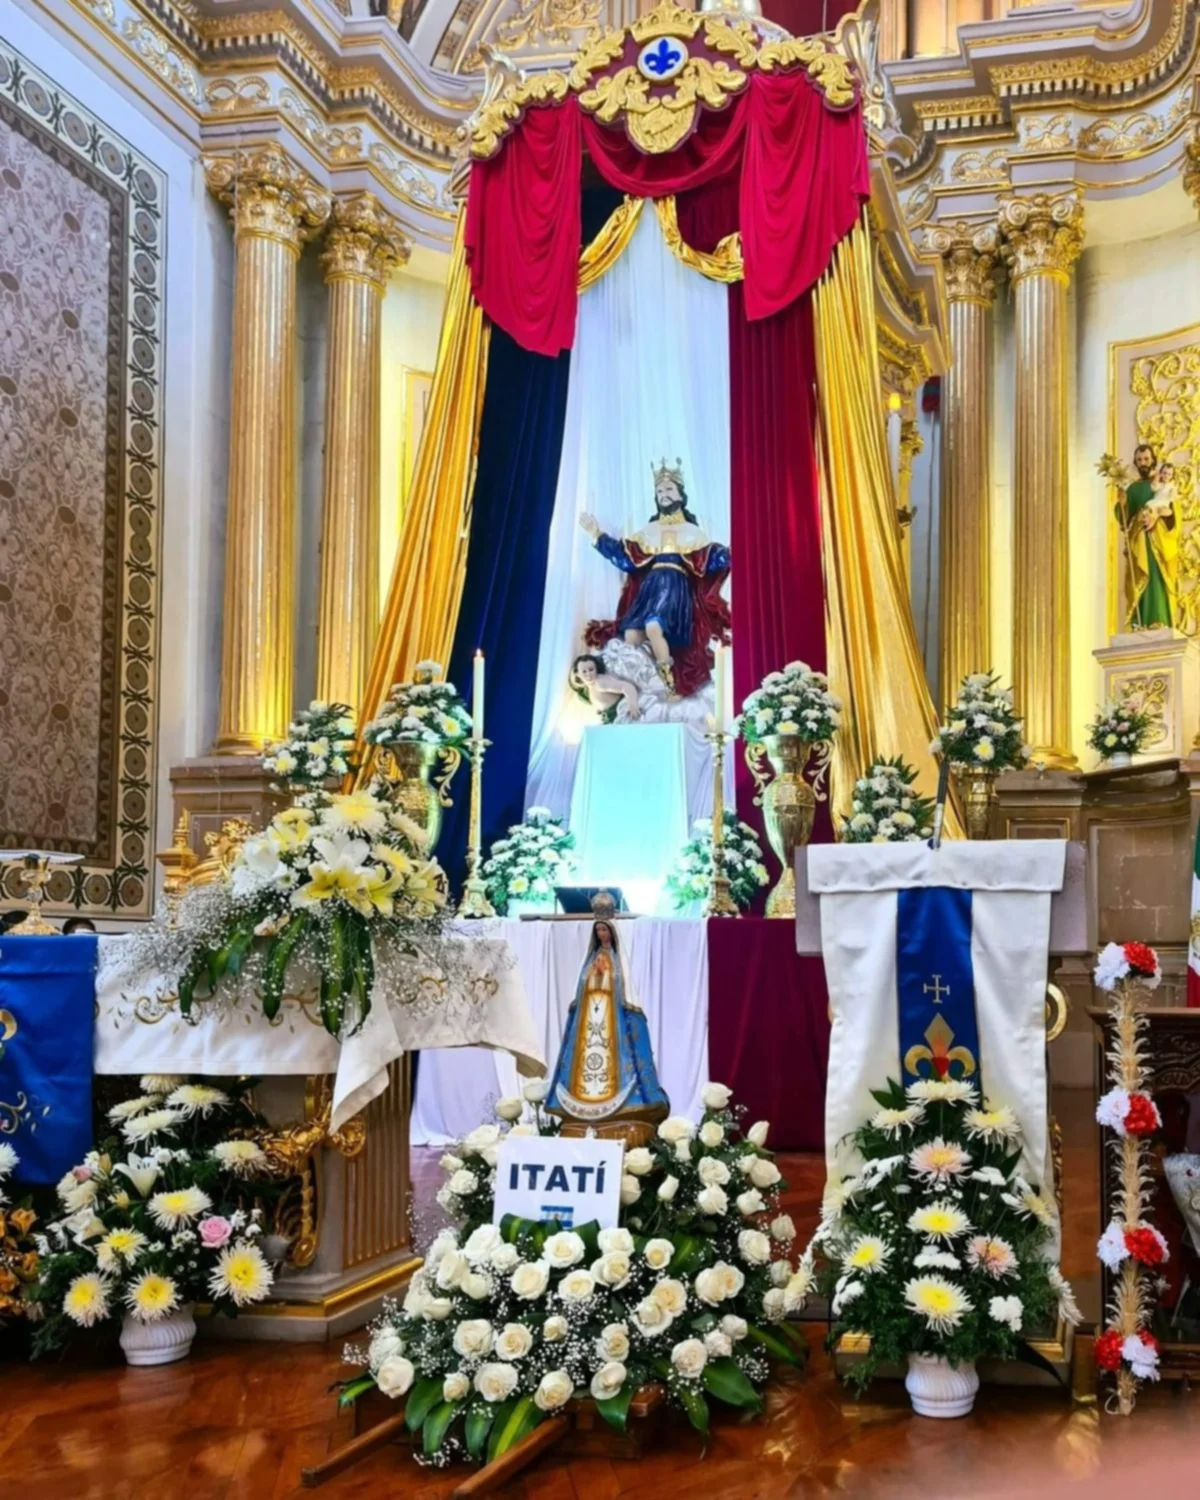 Emotiva peregrinación de la Virgen de Itatí en un país centroamericano